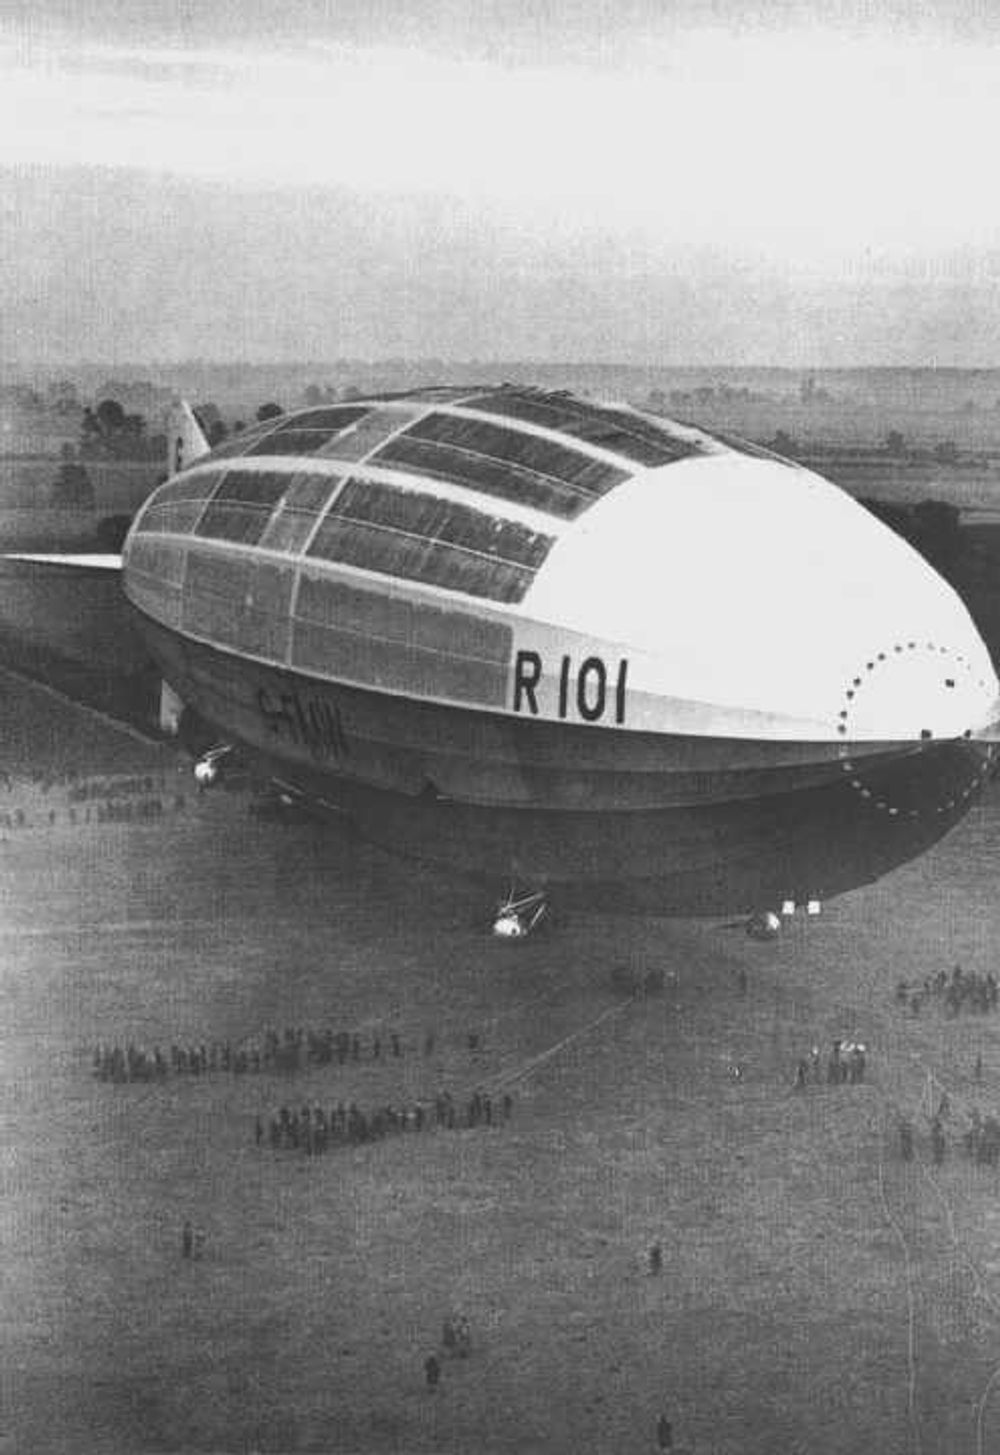 Luftskiper R101 før jomfruturen. R101 er en ombygget versjon av R100, som aldri kom seg i lufta. Mange omkom da R101 styrtet i Frankrike på jomfruturen. 46 av totalt 54 personer om bord omkom.